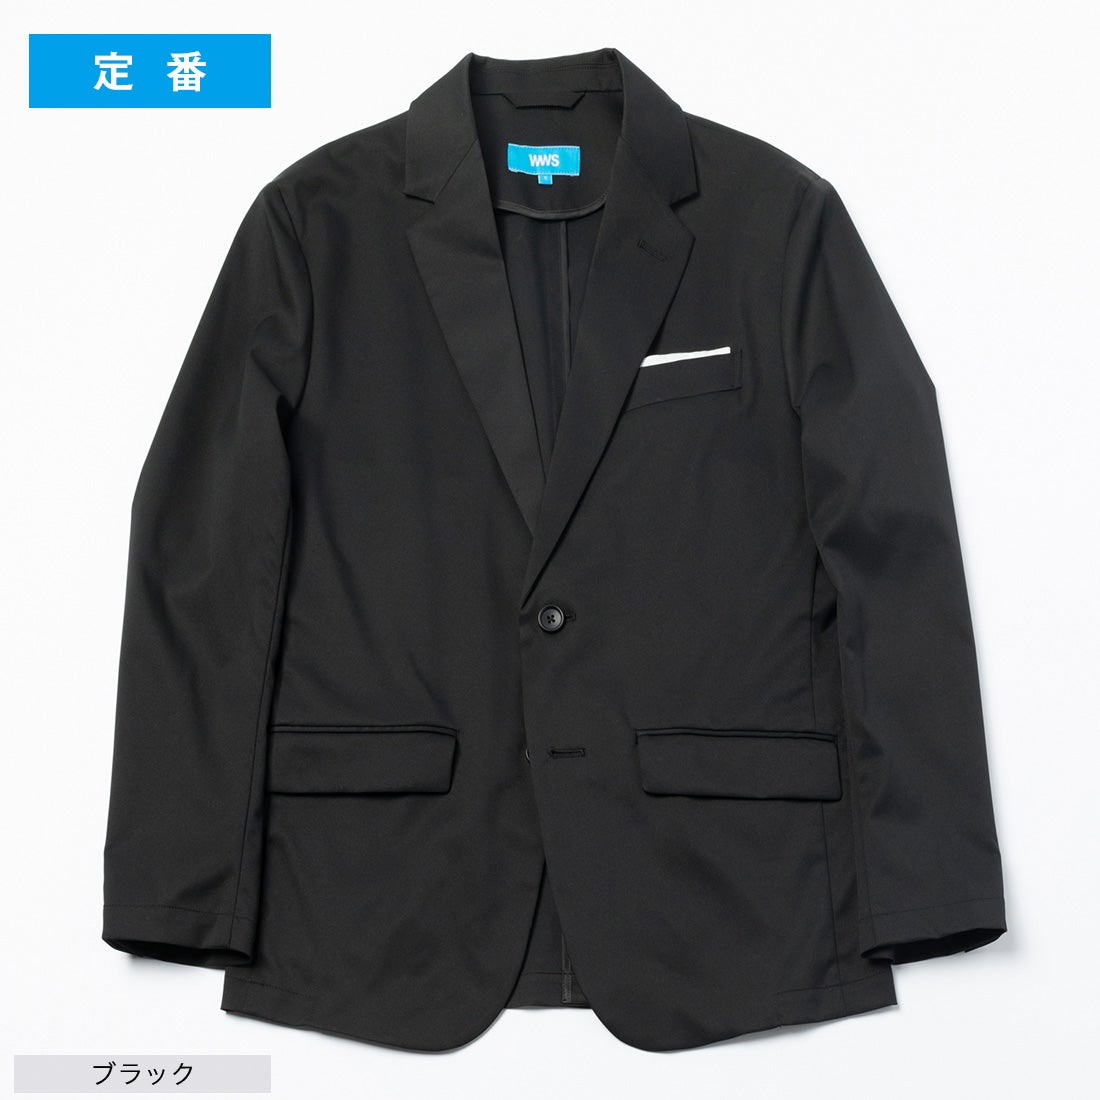 スーツ - 3